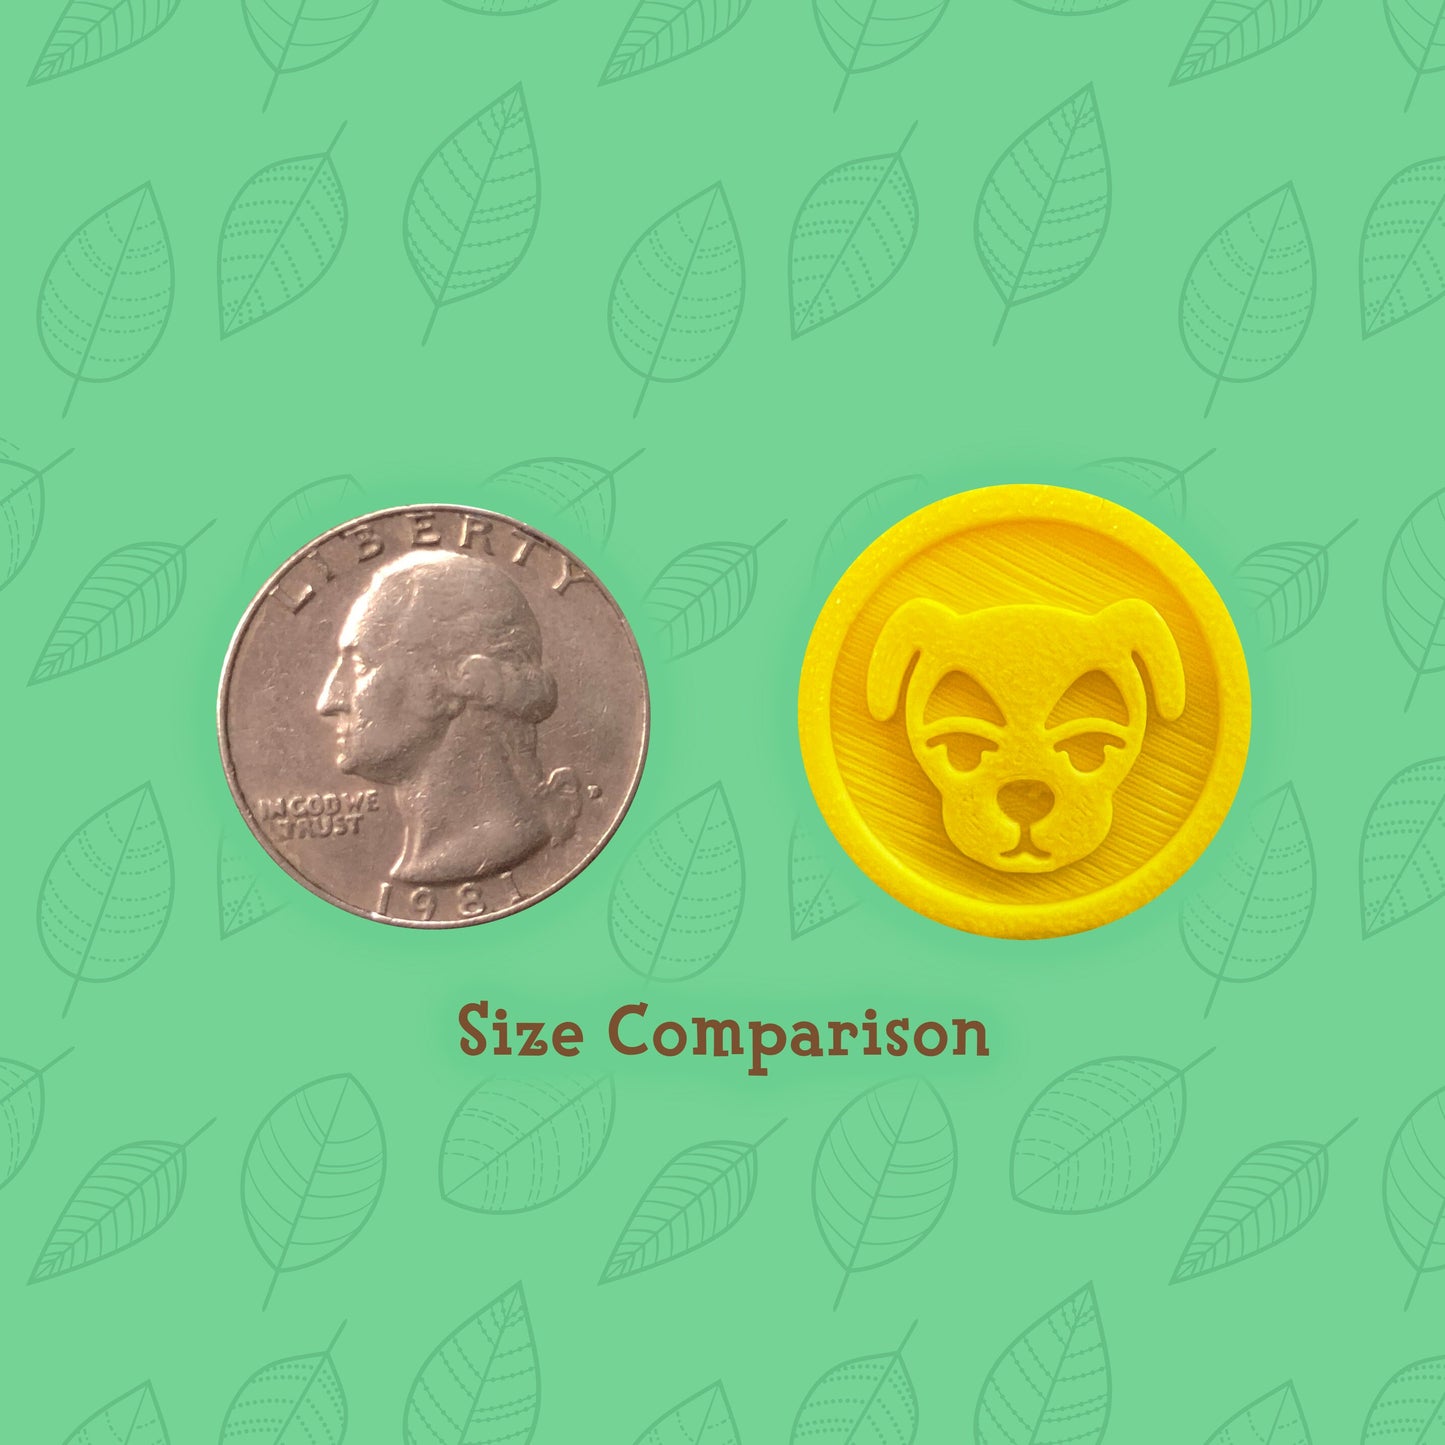 Animal Crossing Replica Coins - KK Slider Bell